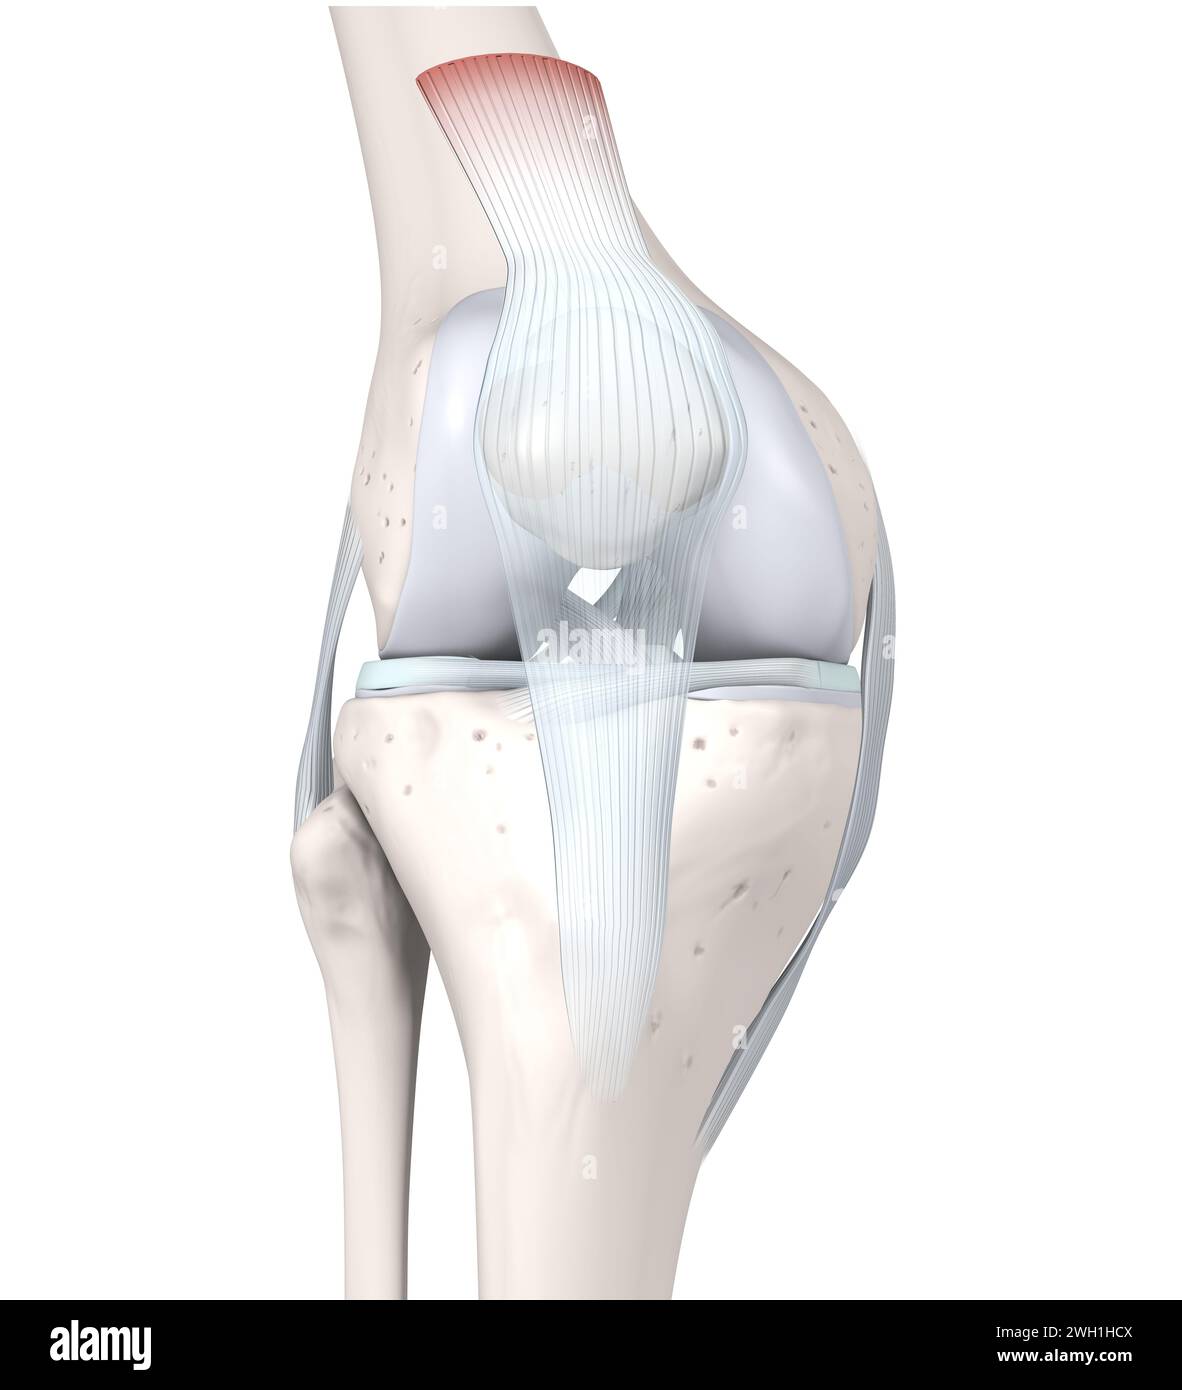 Illustrazione 3D che mostra l'anatomia articolare del ginocchio. Ossa, menischi, cartilagine articolare e legamenti. Illustrazione 3D. Foto Stock